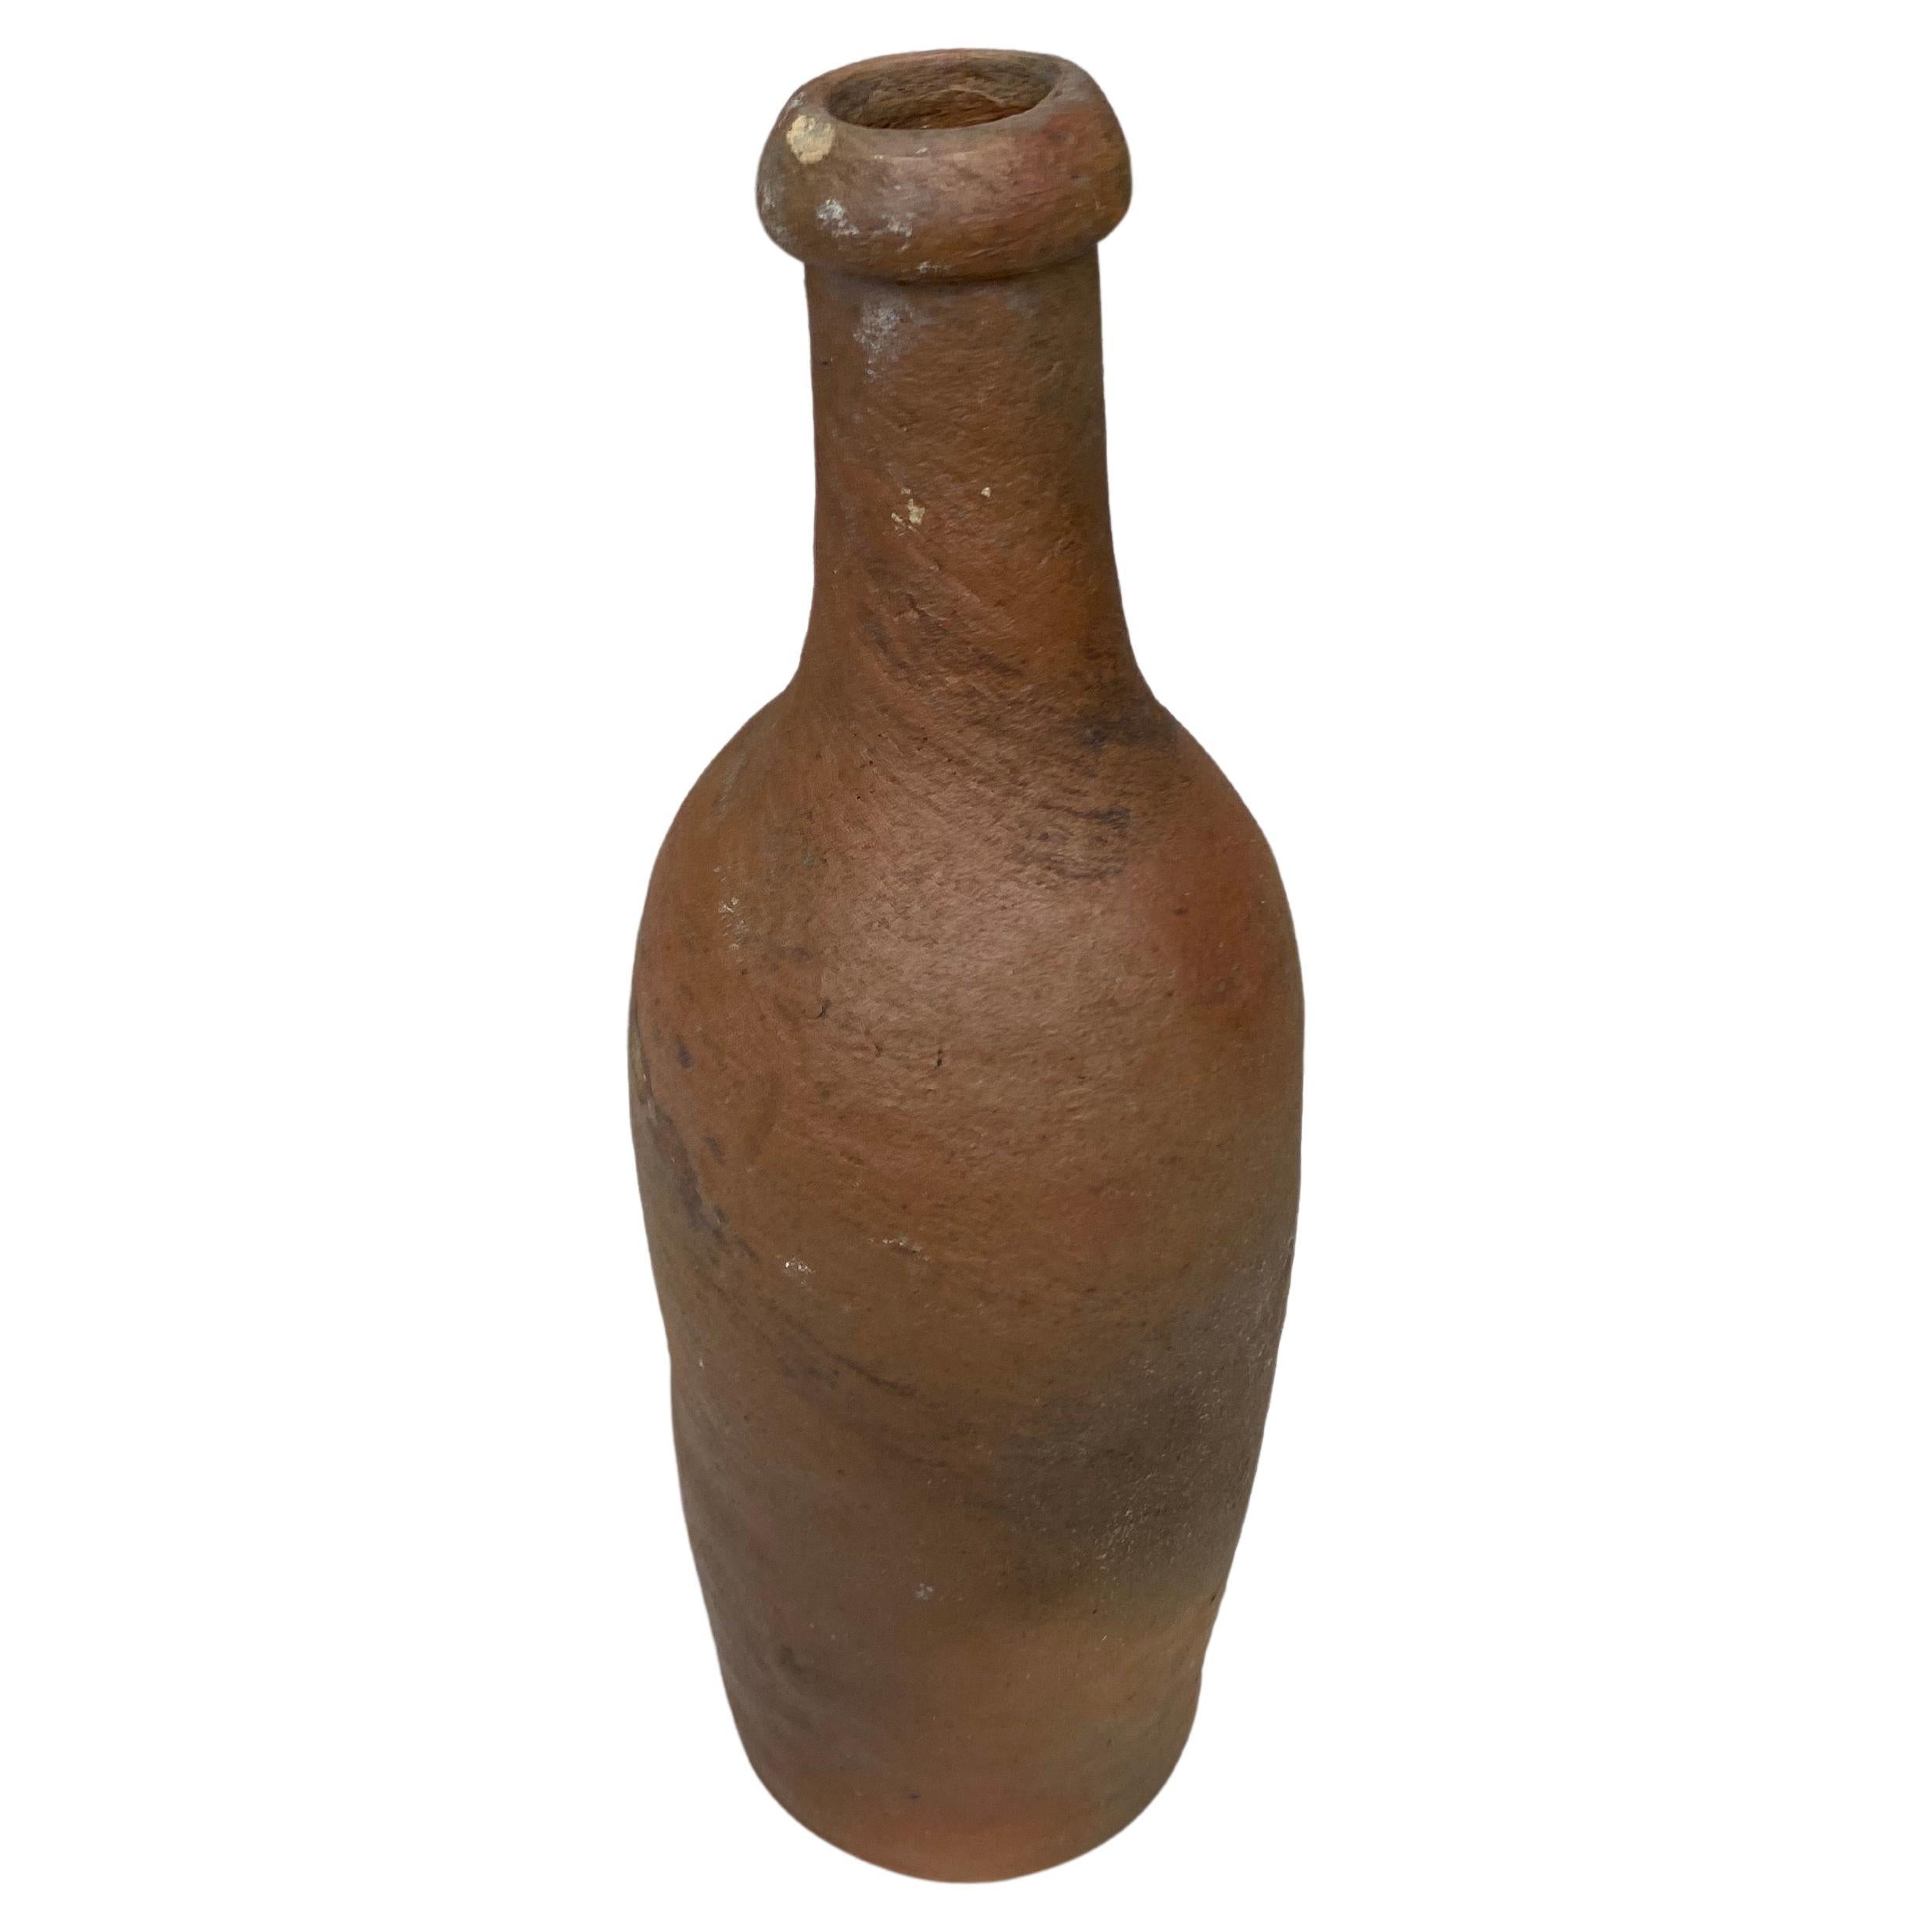 Französische Apfelweinflasche aus der Normandie, Ende des 19. Jahrhunderts.
13 Flaschen erhältlich, die separat verkauft werden.
Verschiedene Größen.